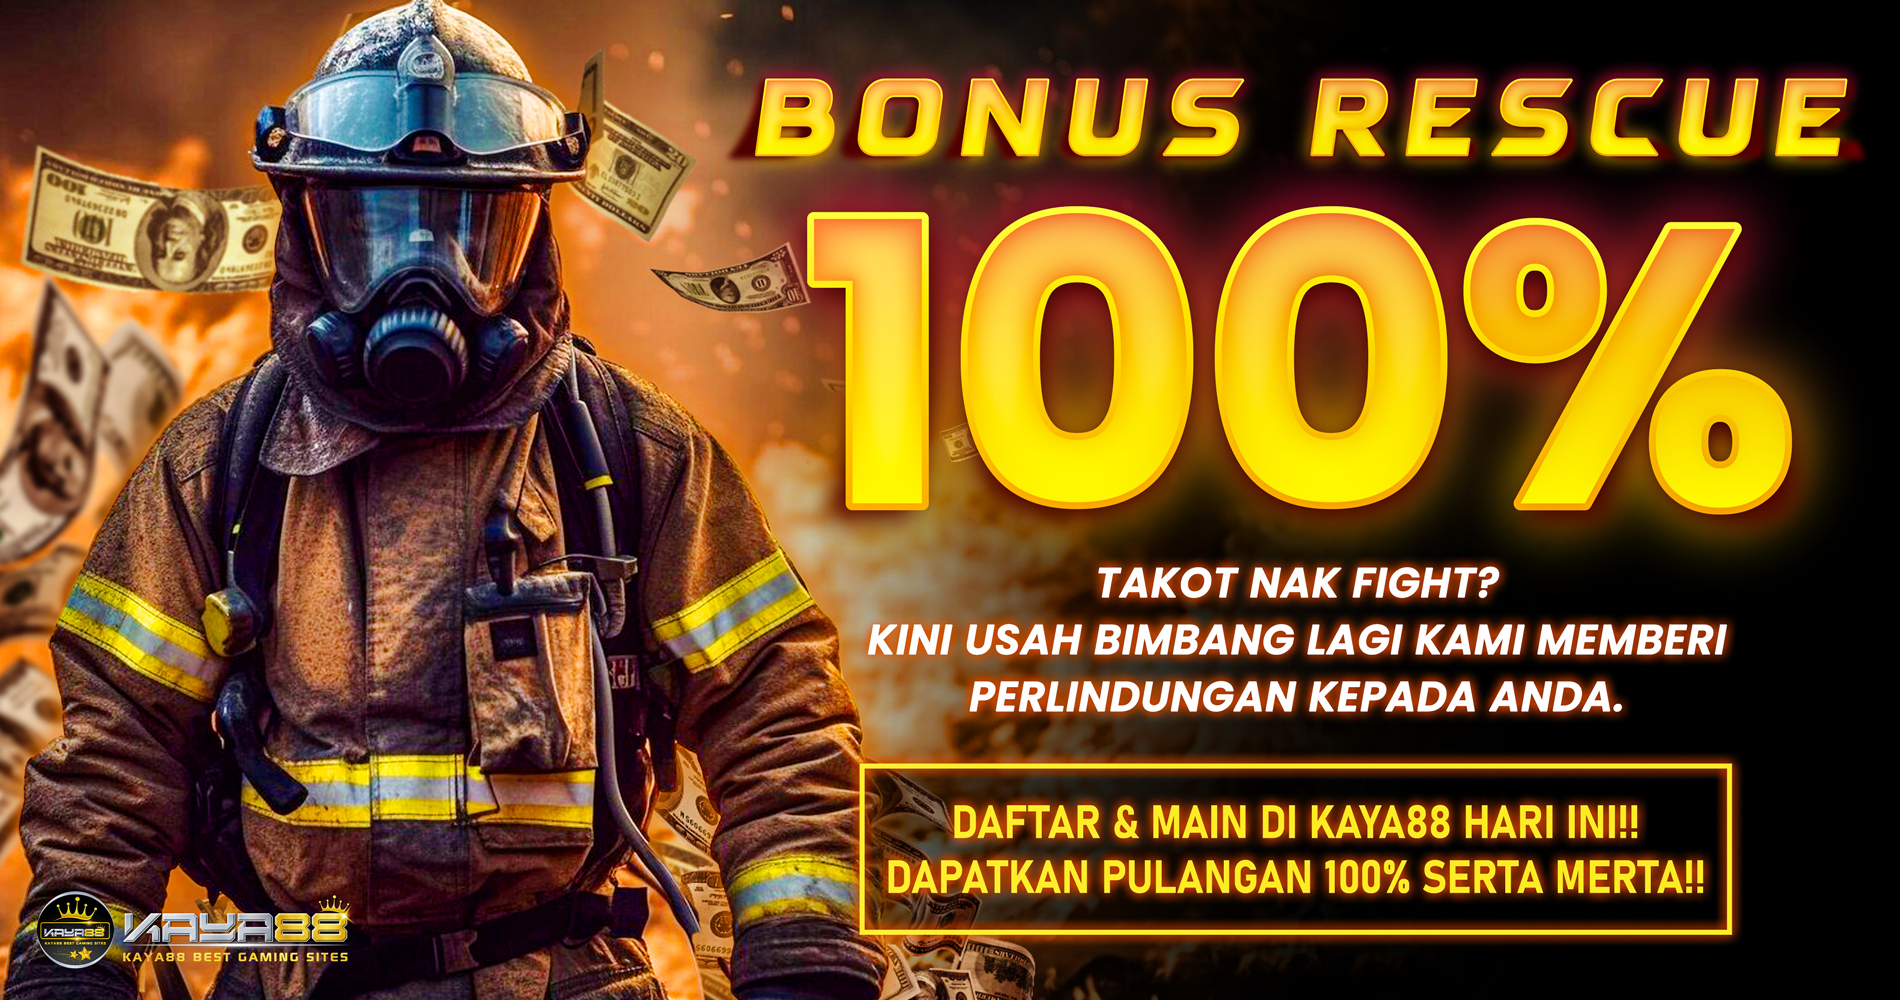 Rescue Bonus 100%